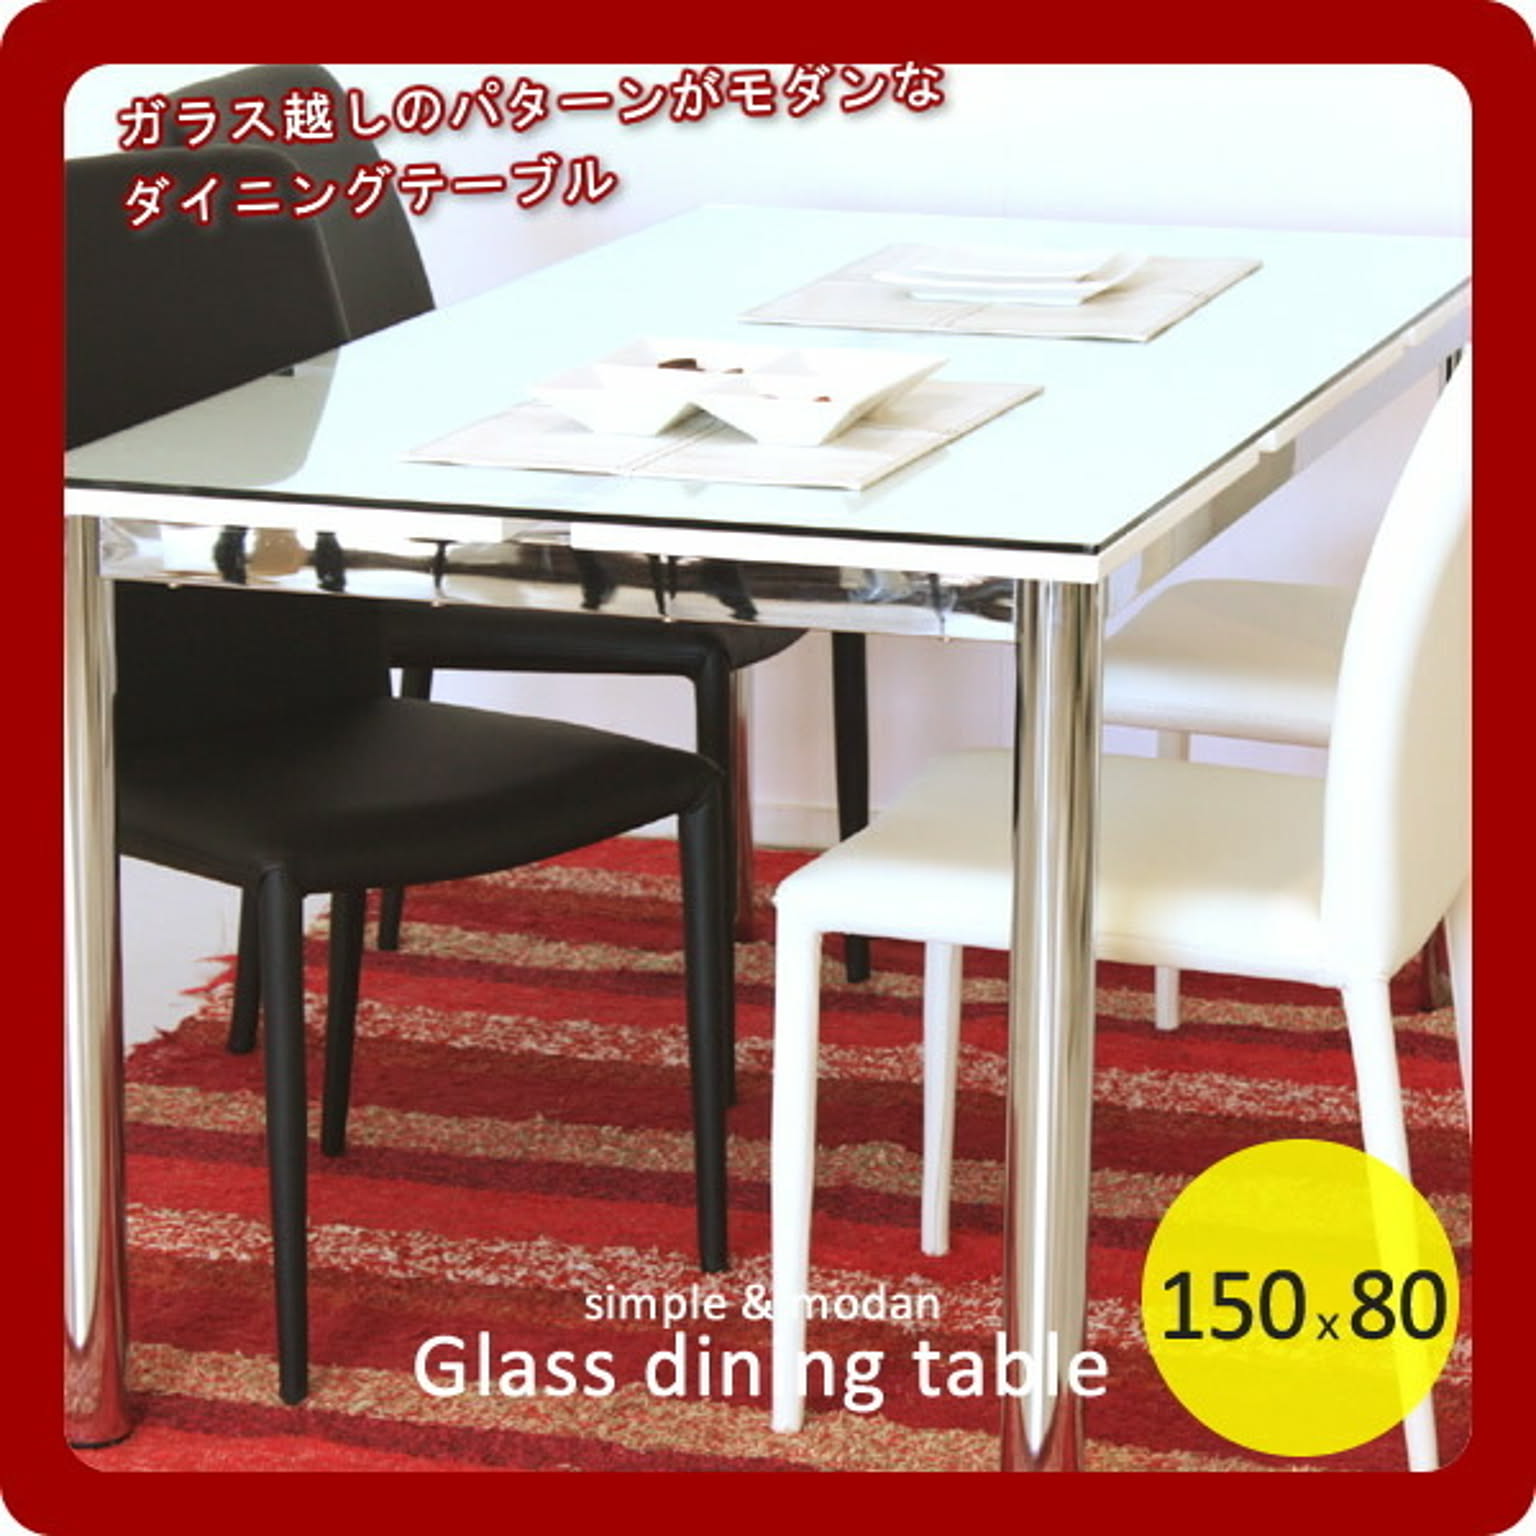 東馬 / ガラスダイニングテーブル